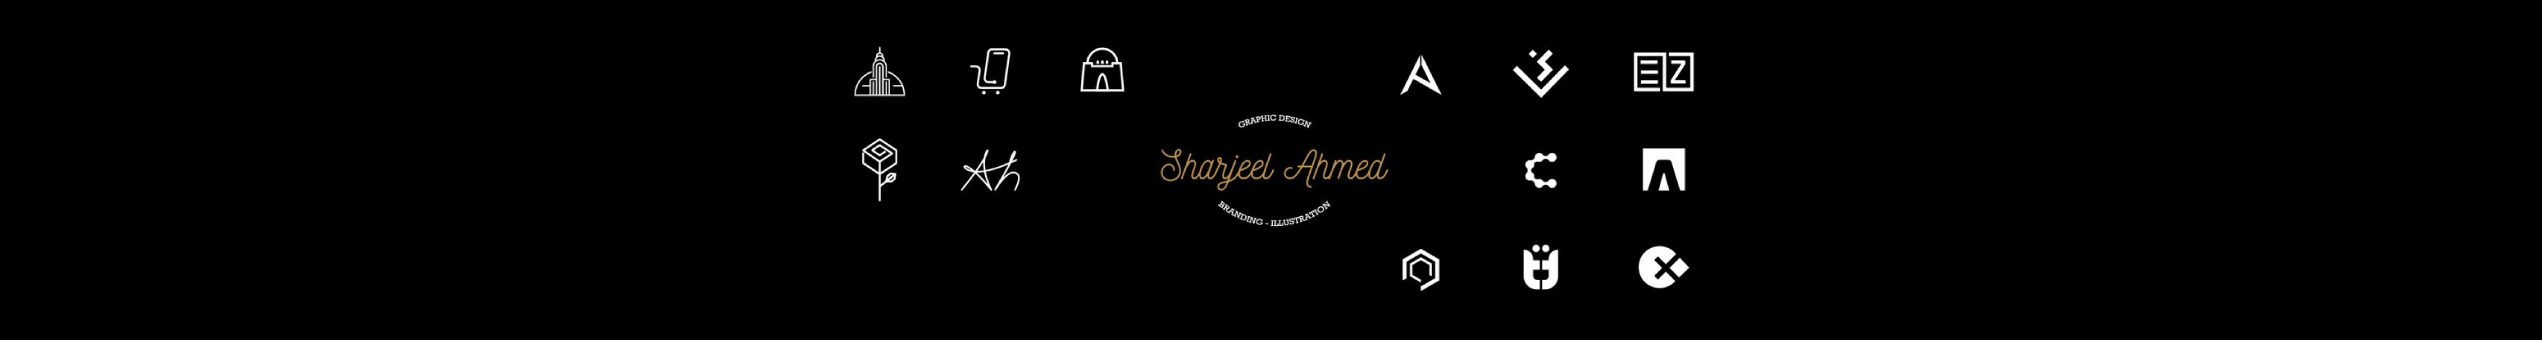 Sharjeel Ahmeds profilbanner